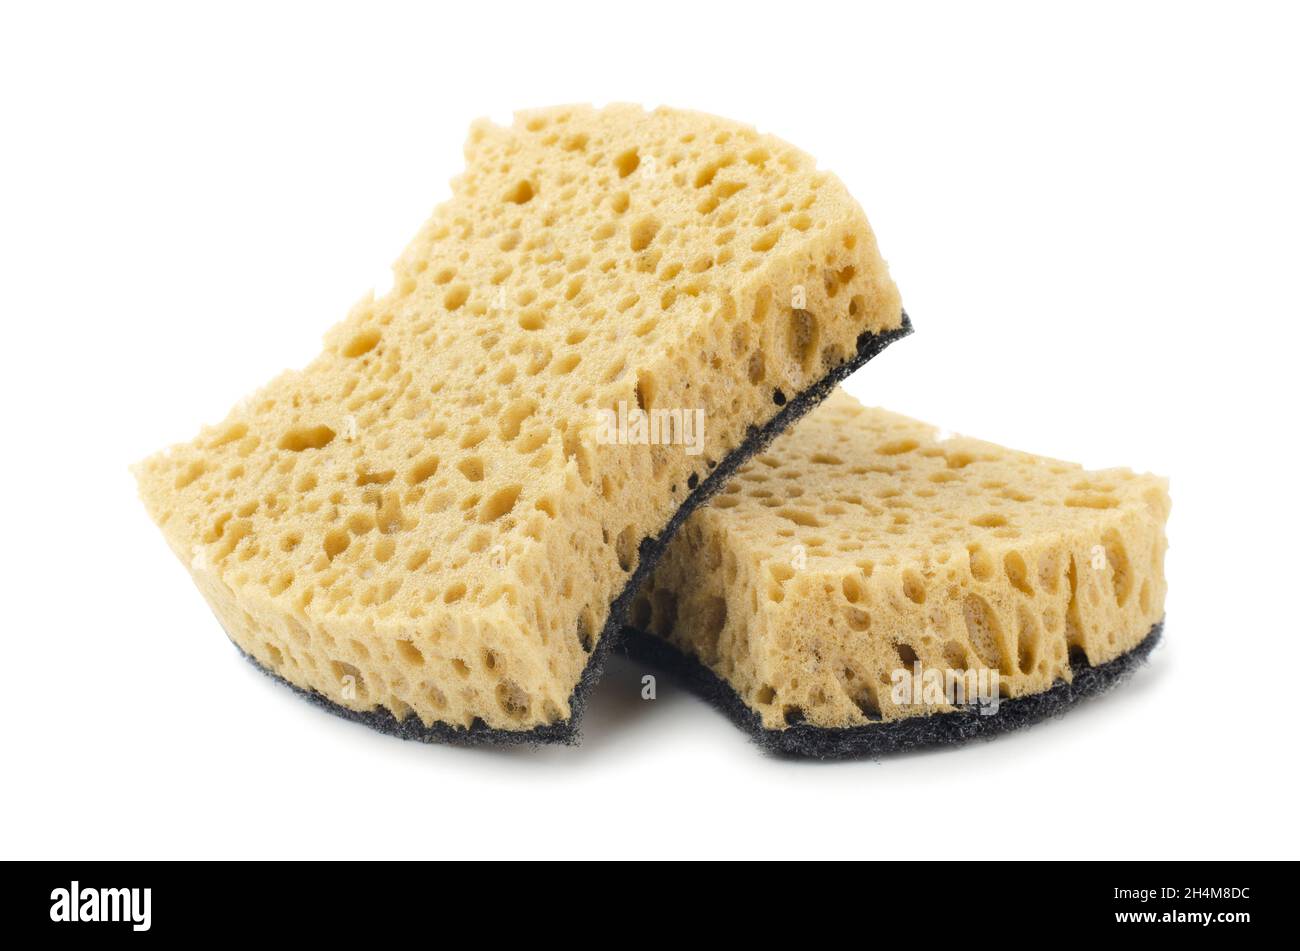 Sponges for dishwashing isolated on a white background Stock Photo